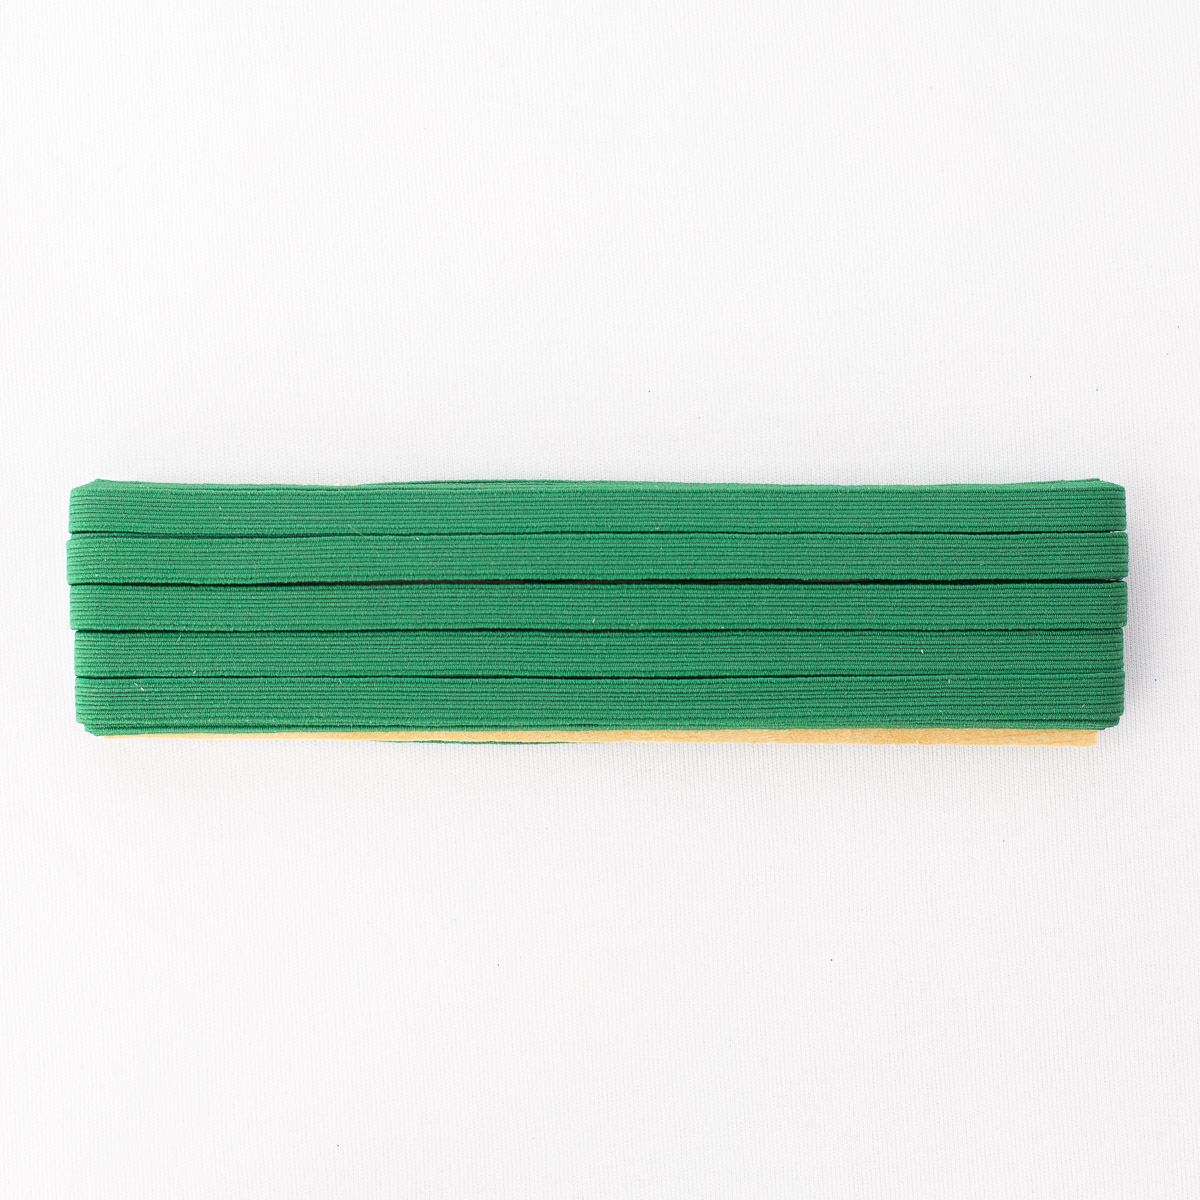 Elástico Chato - Nº12 (7mm) - Verde Bandeira - 10 Metros